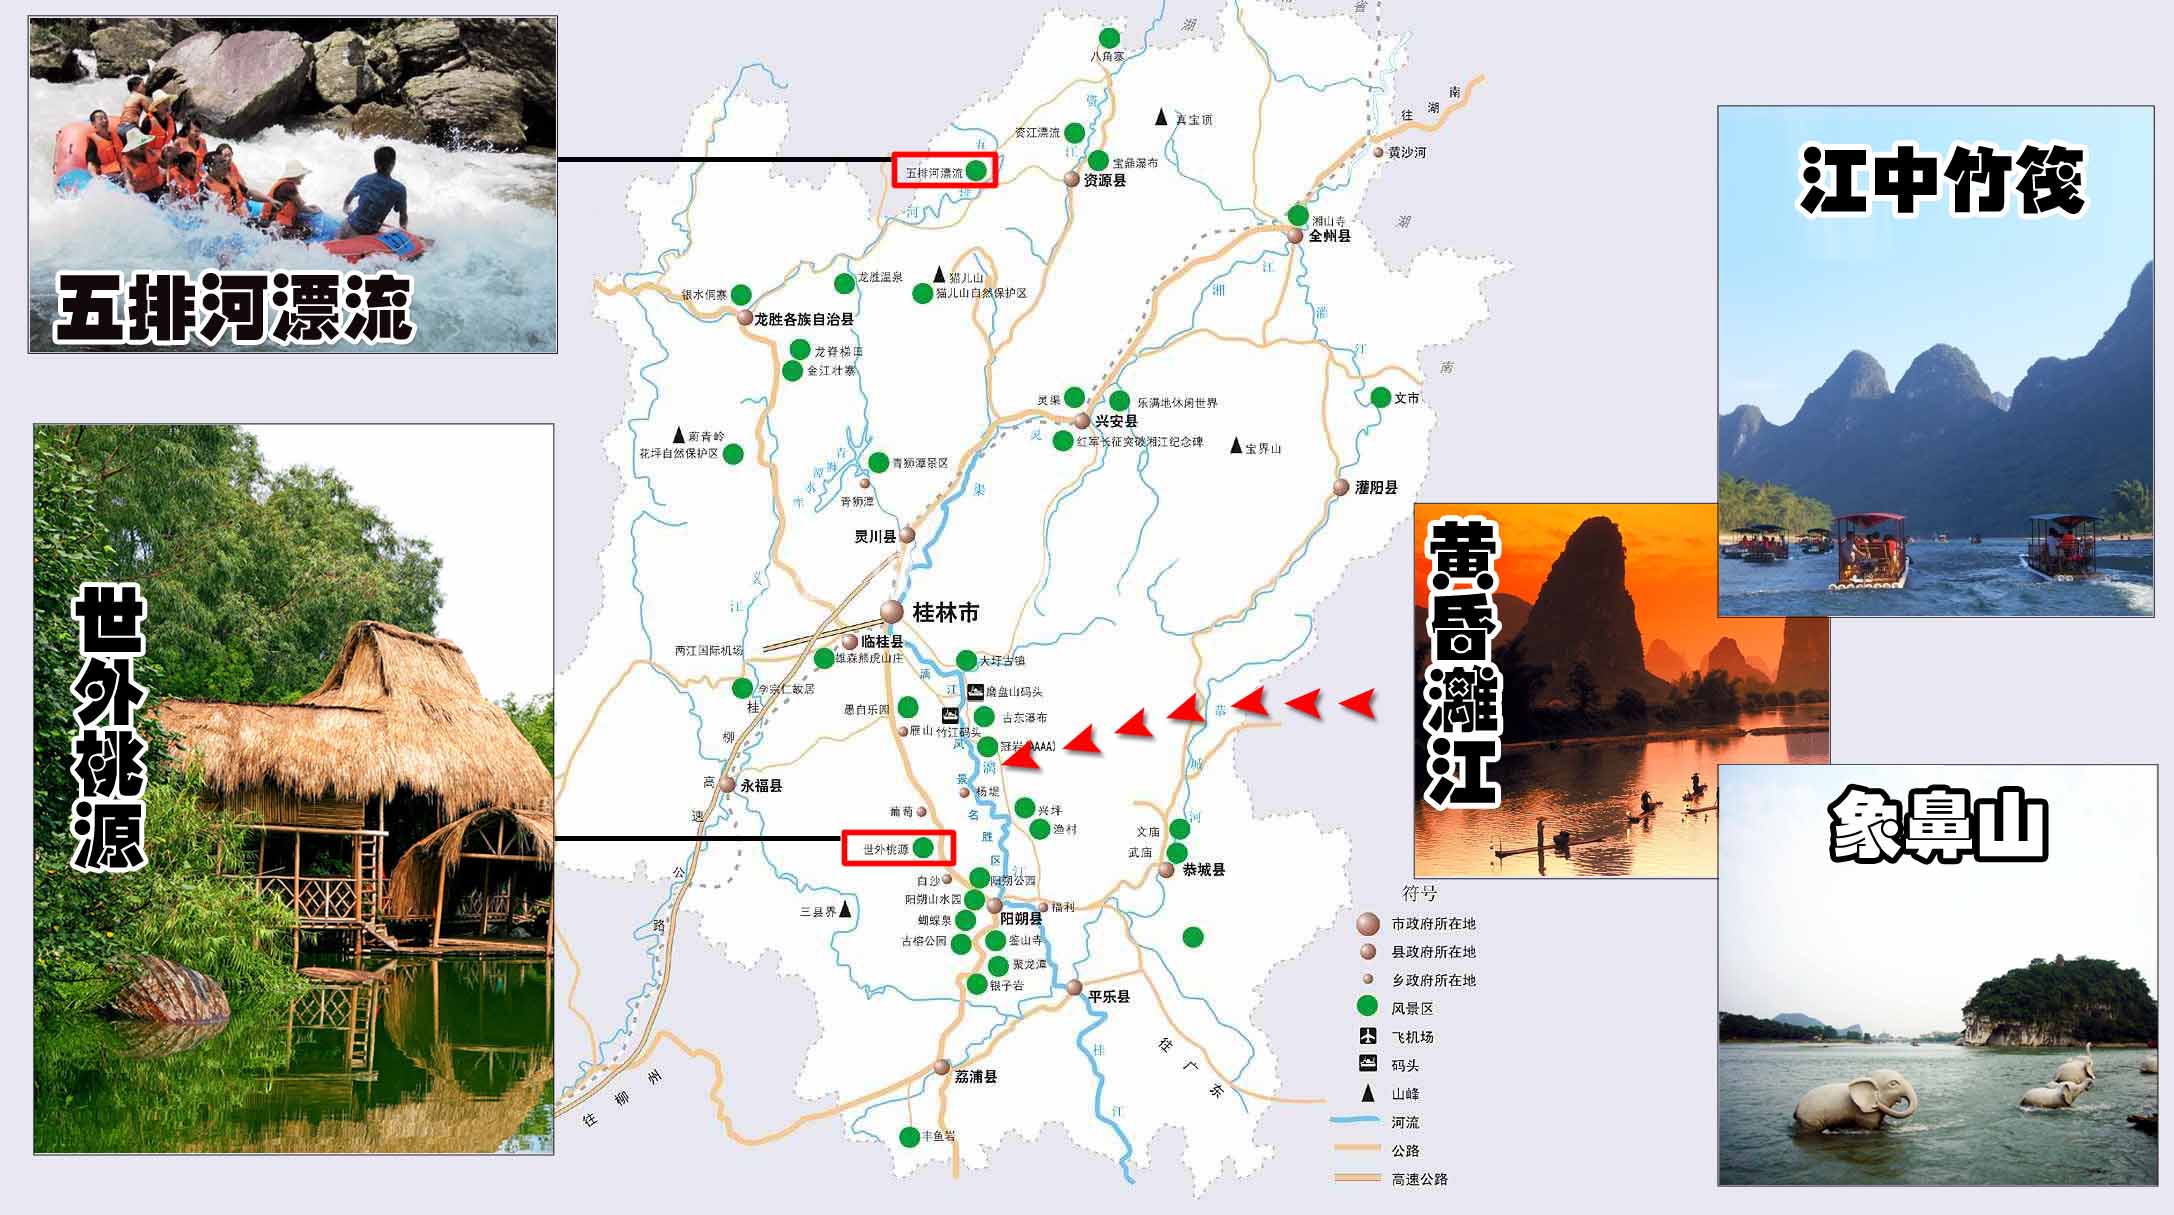 广西桂林旅游地图大全推荐